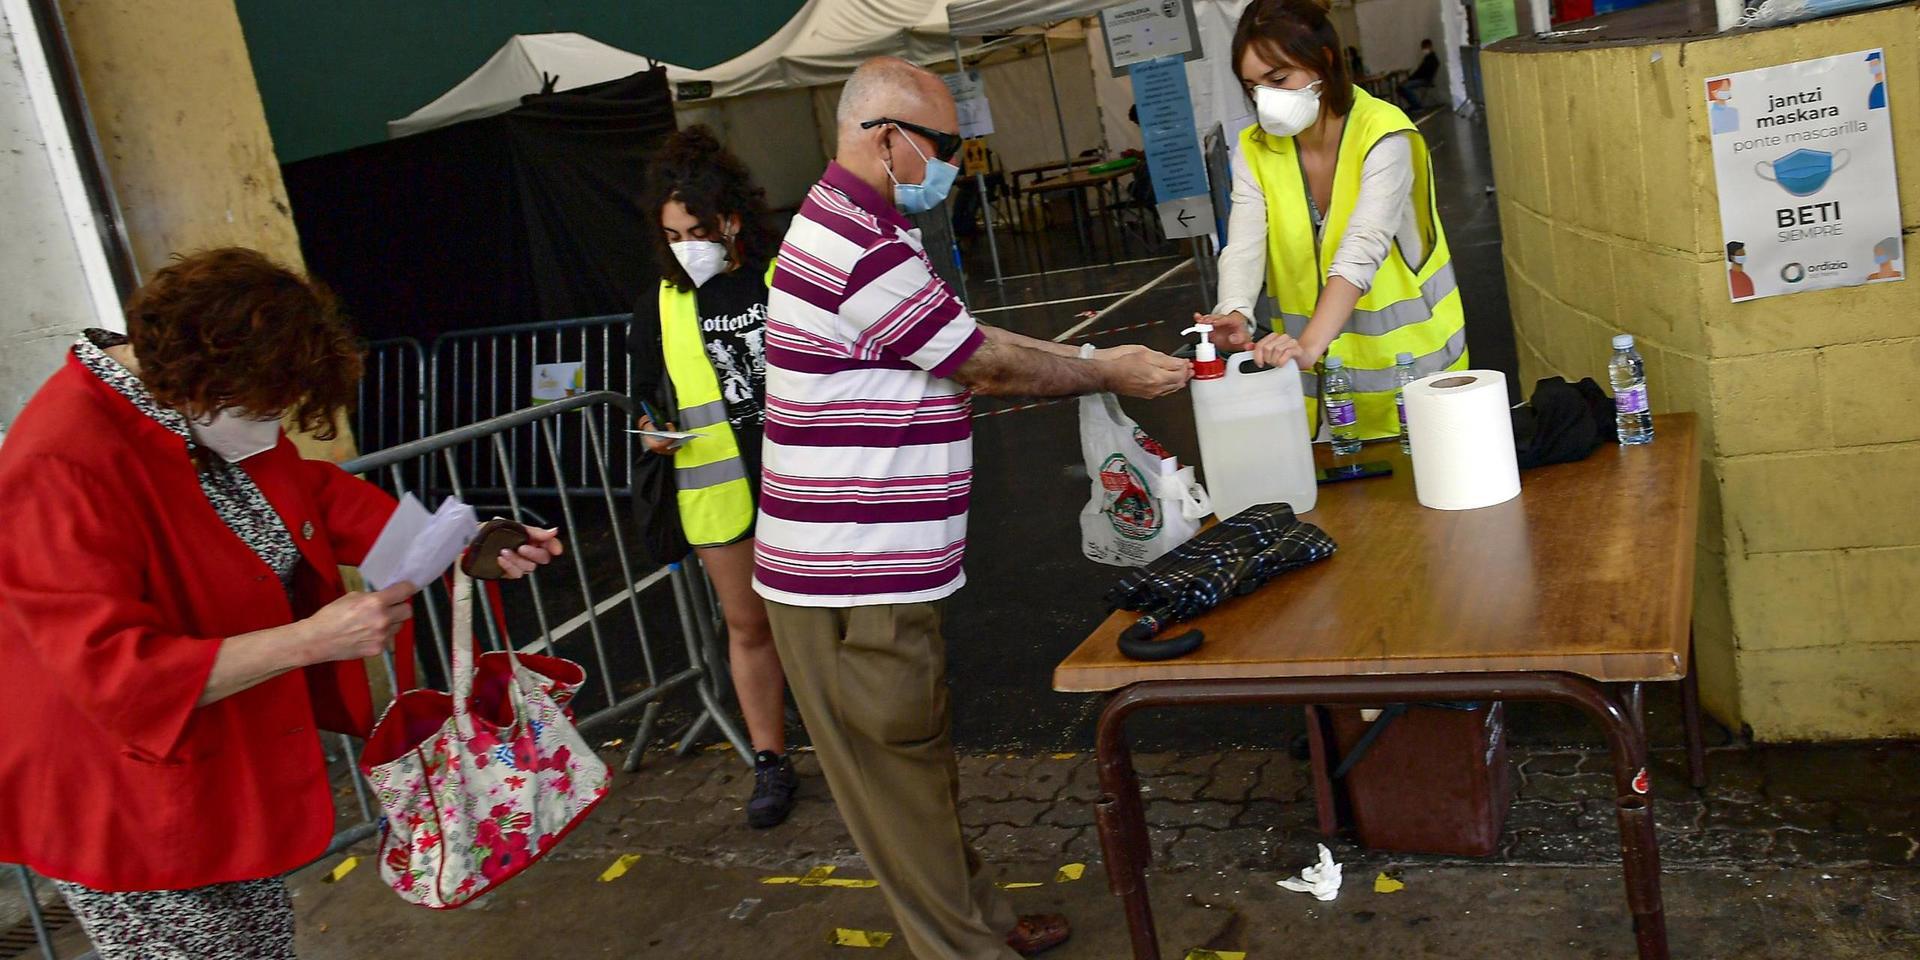 Väljare bär munskydd och använder handsprit i samband med valet. På bilden syns väljare i Baskien.